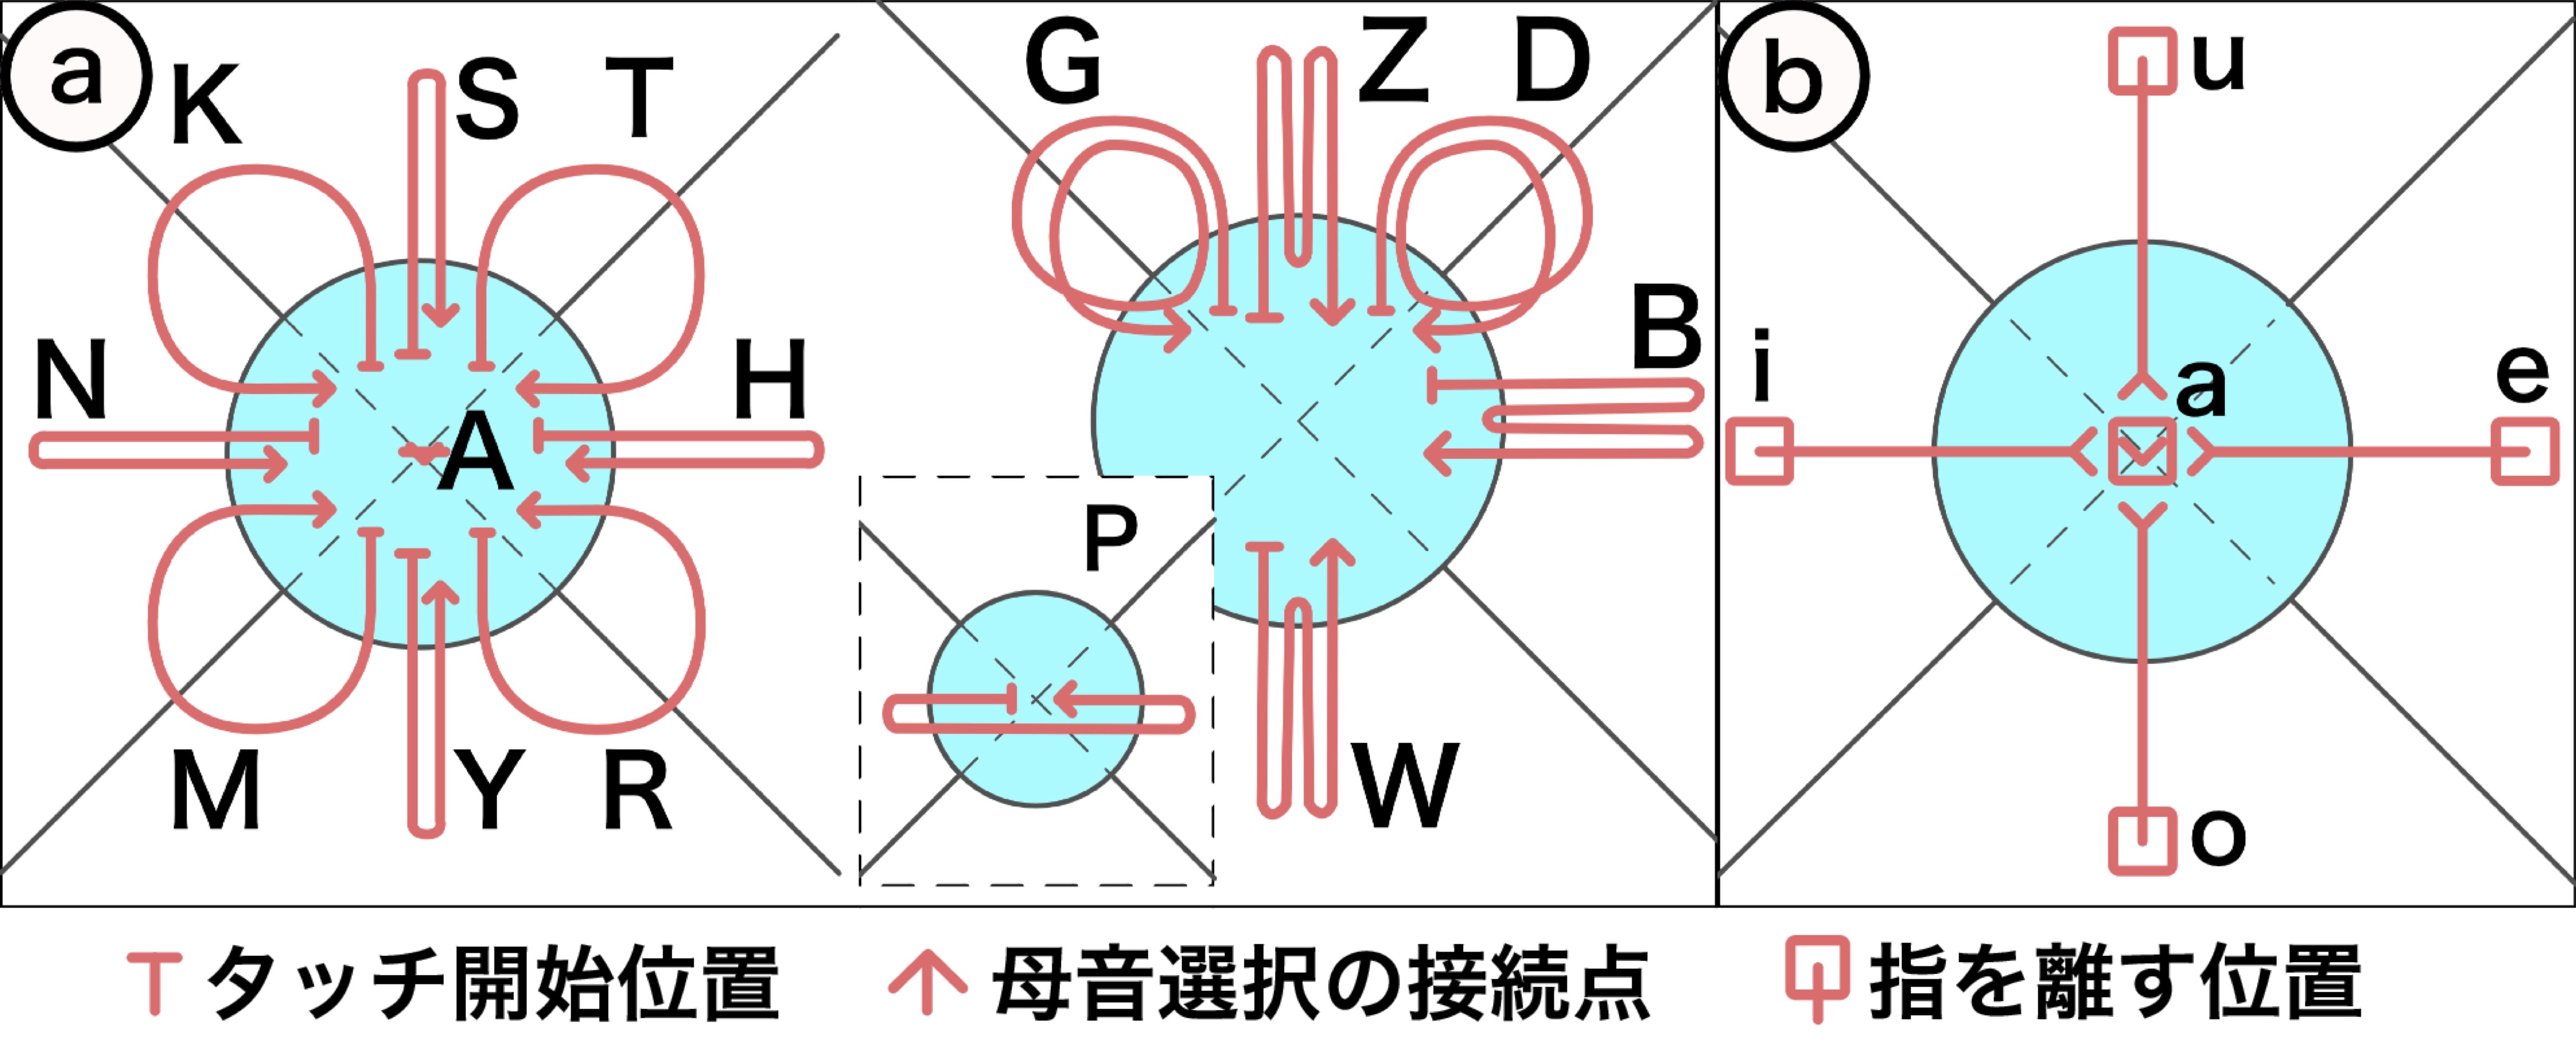 子音および母音すべてに対応する指の軌跡の略図．a：子音に対応する軌跡．b：母音に対応する軌跡．